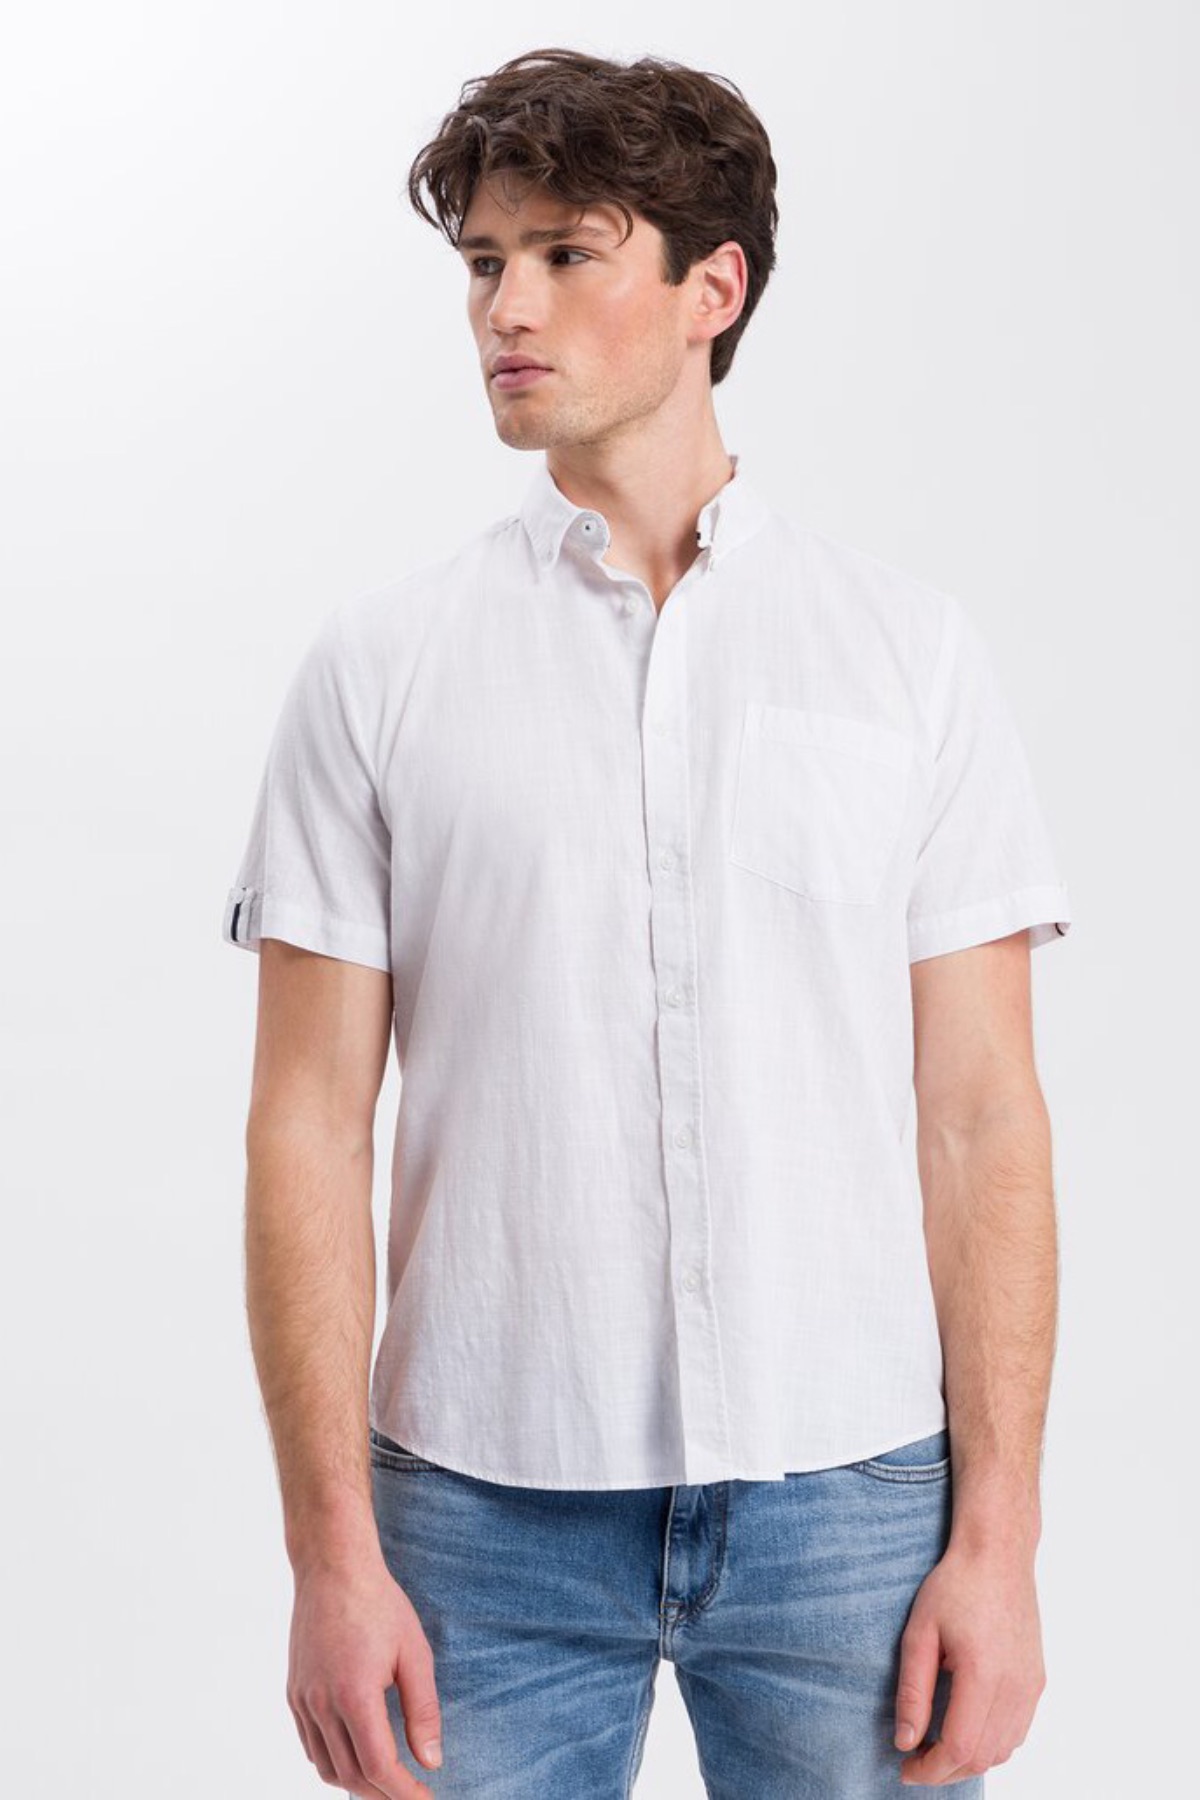 Linen shirt CROSS JEANS 35445-008